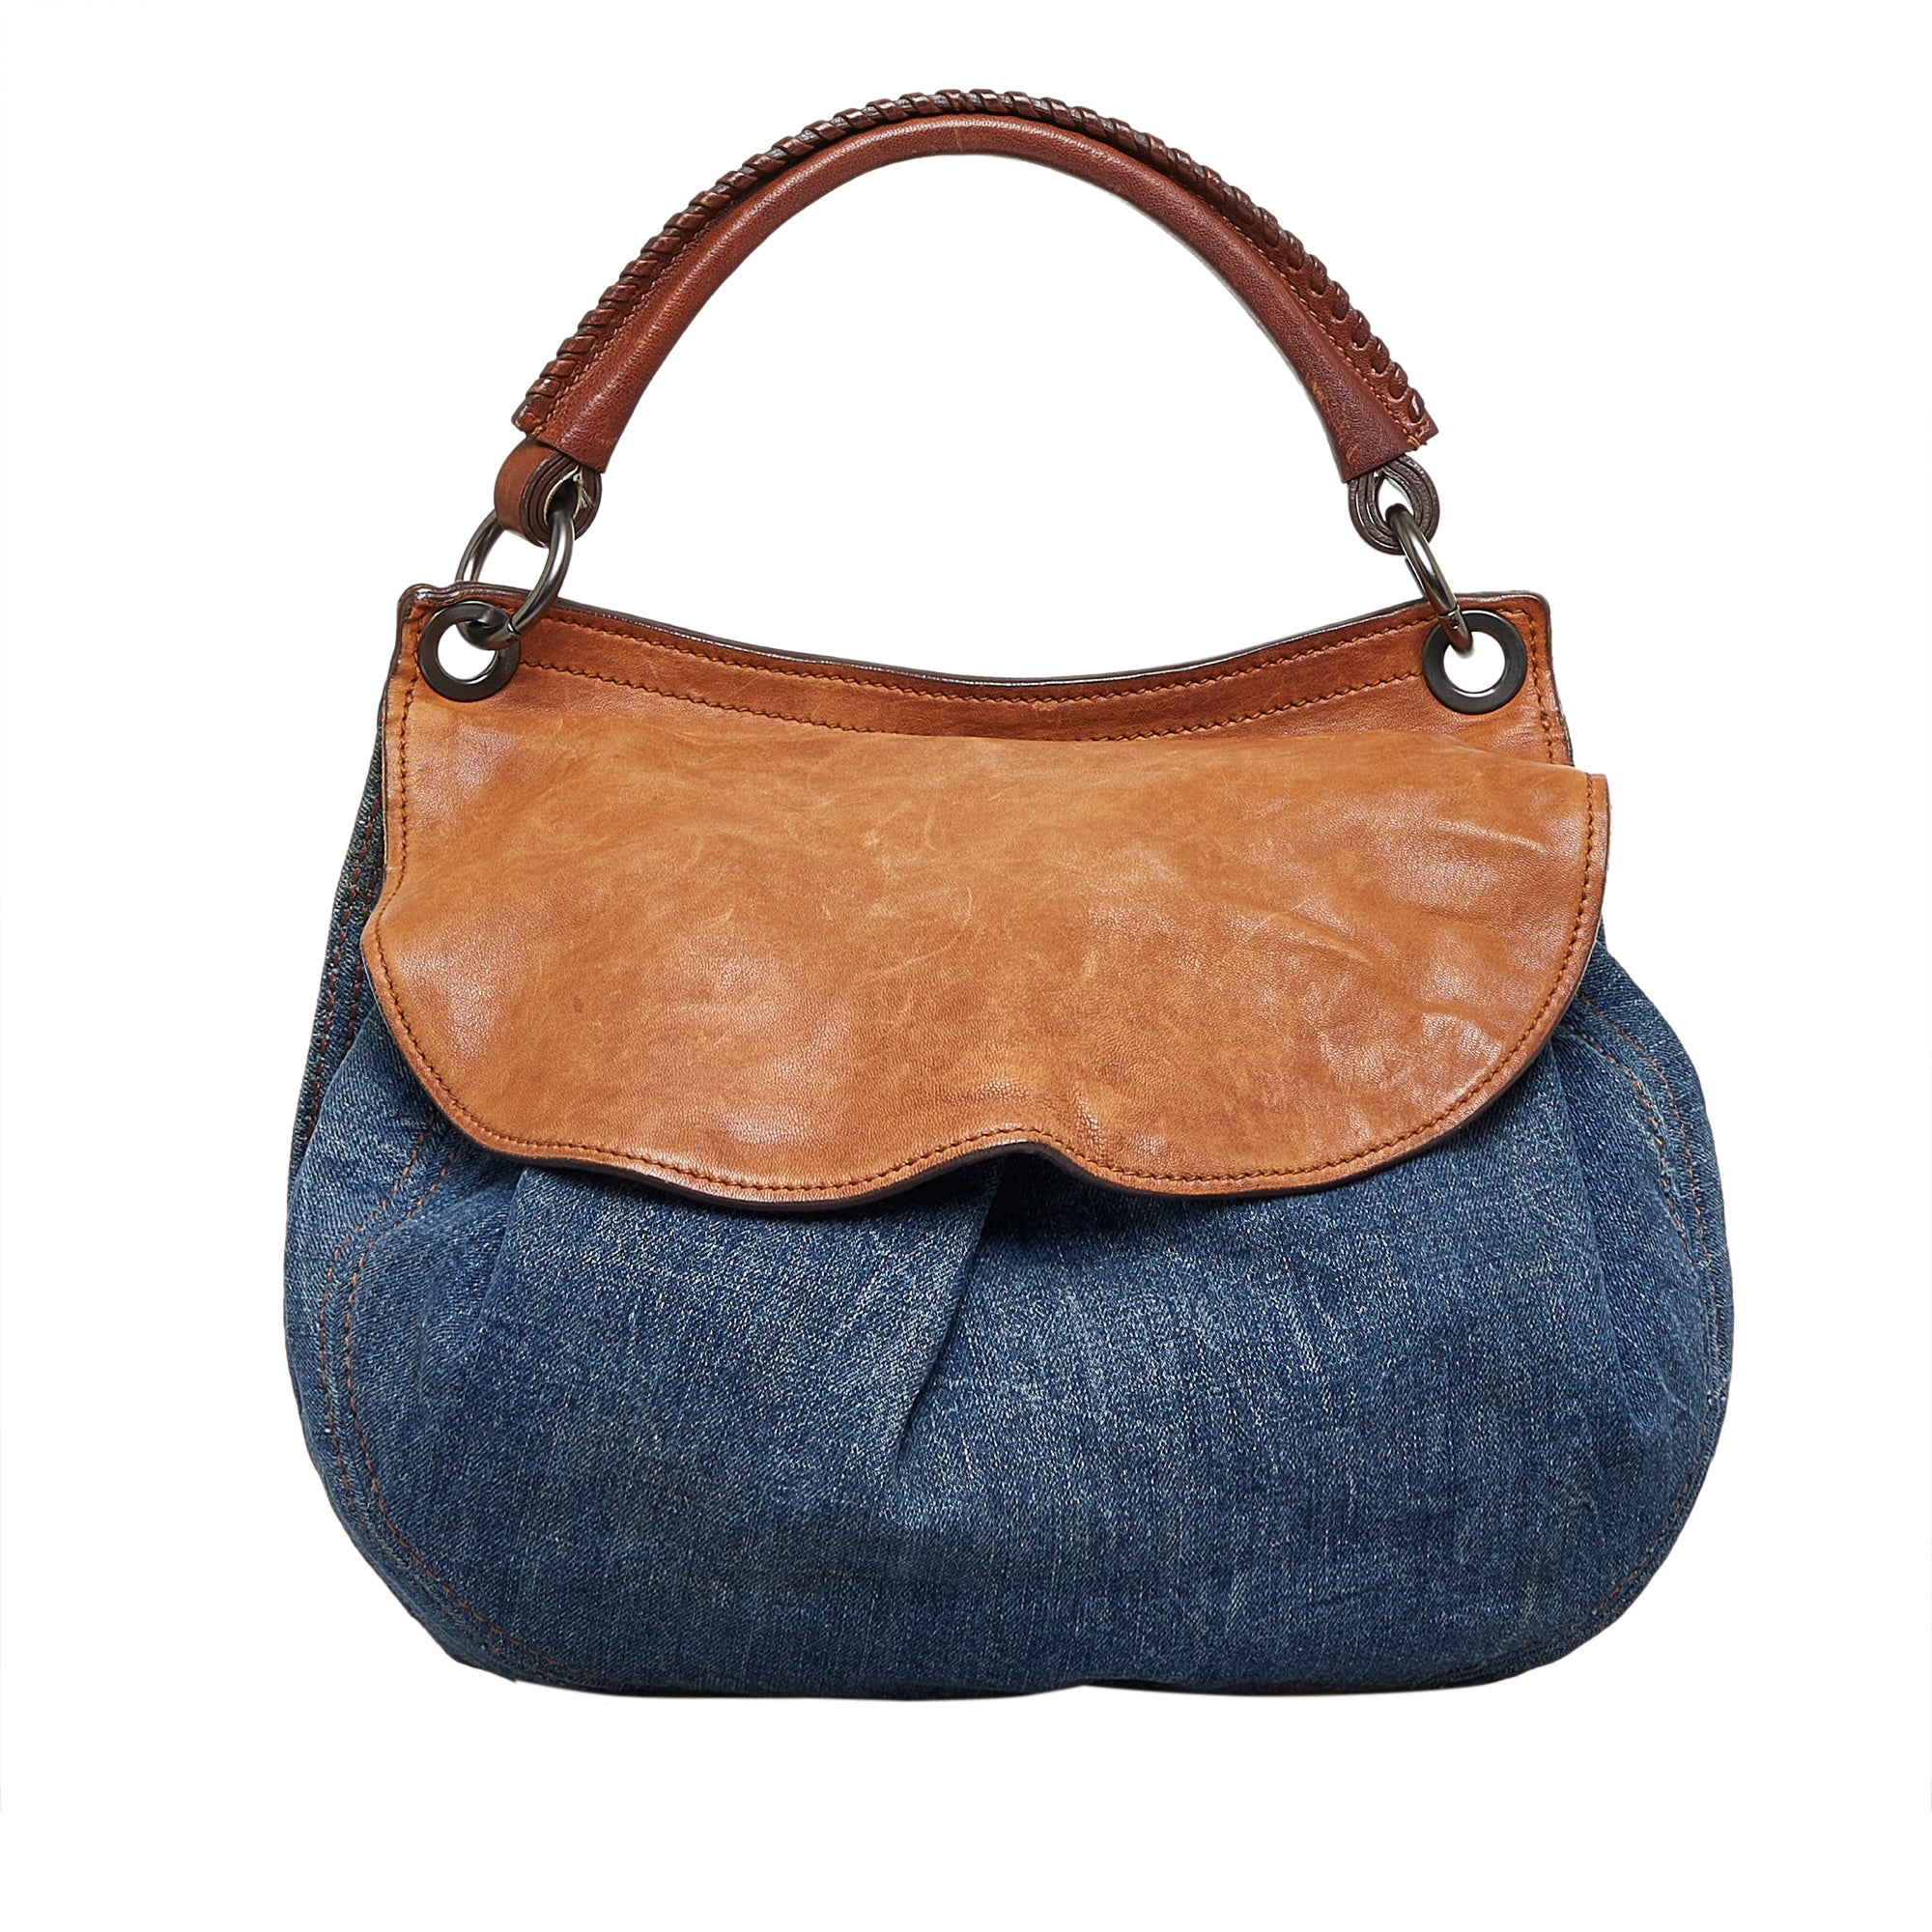 MIU MIU Detachable Shoulder Handbags